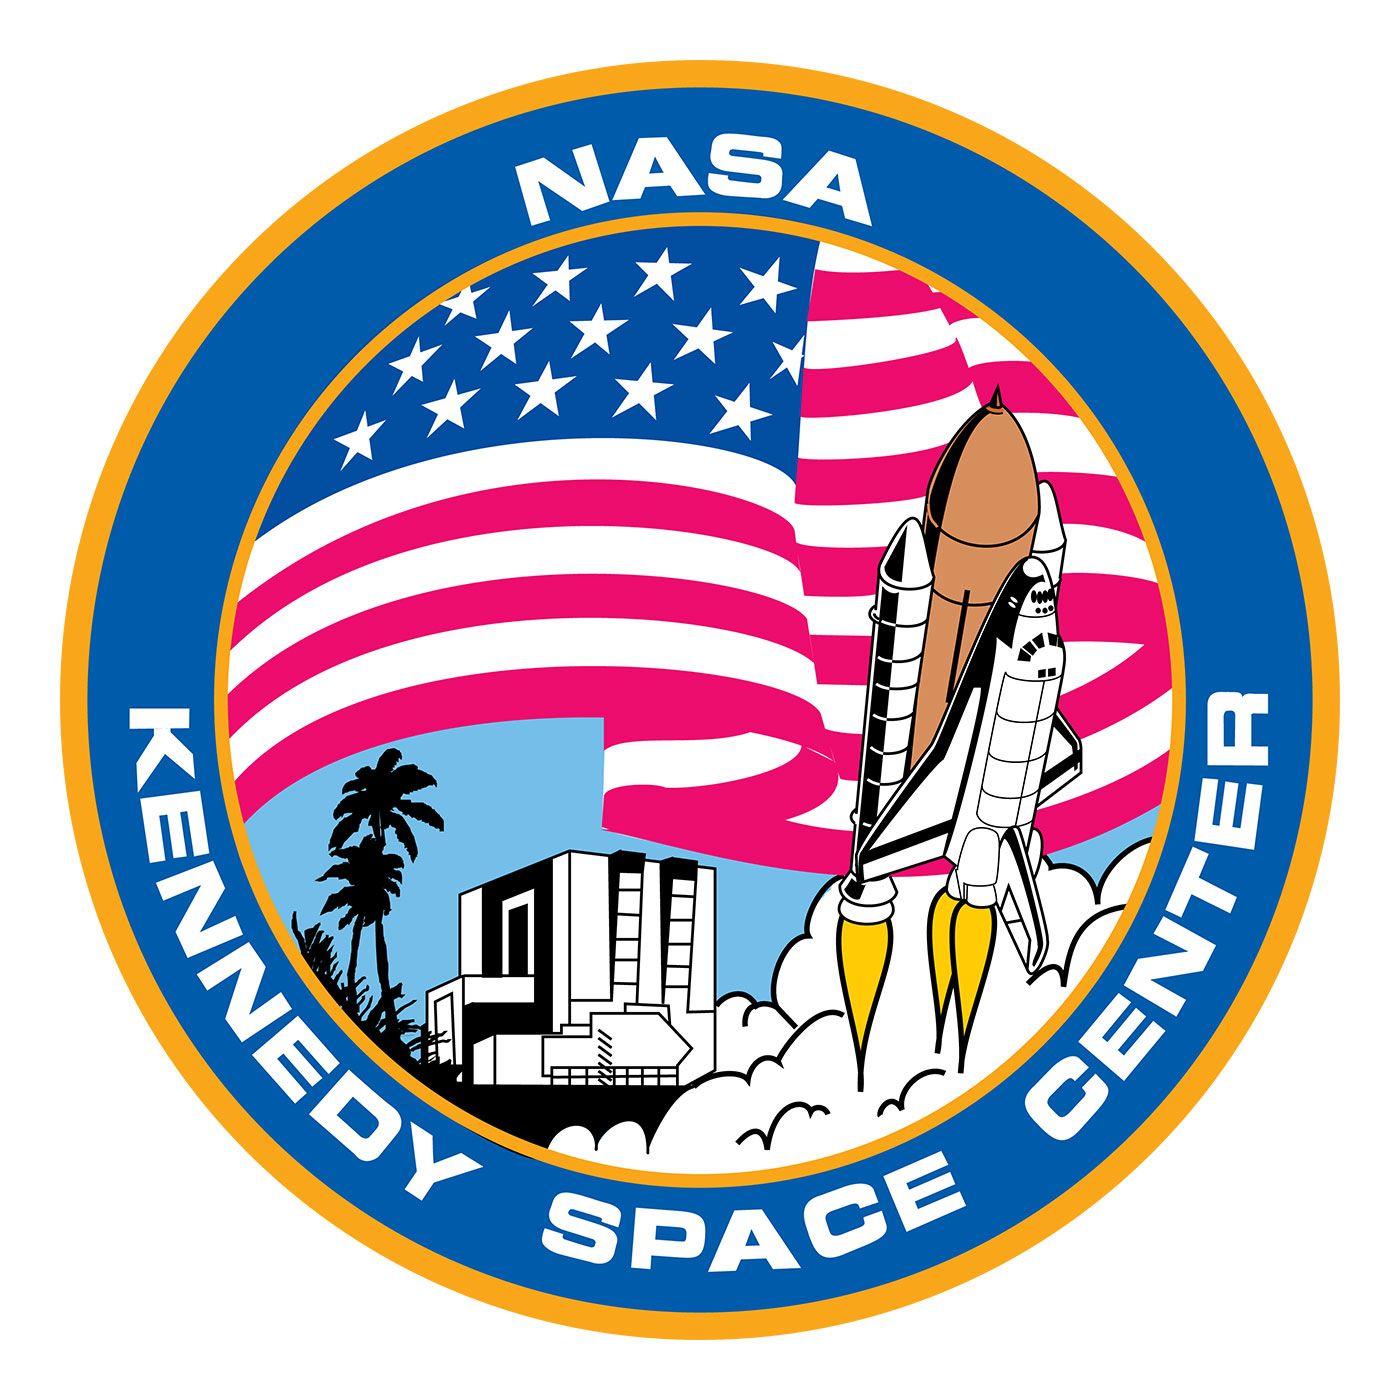 International NASA Logo - NASA's Kennedy Space Center logo (